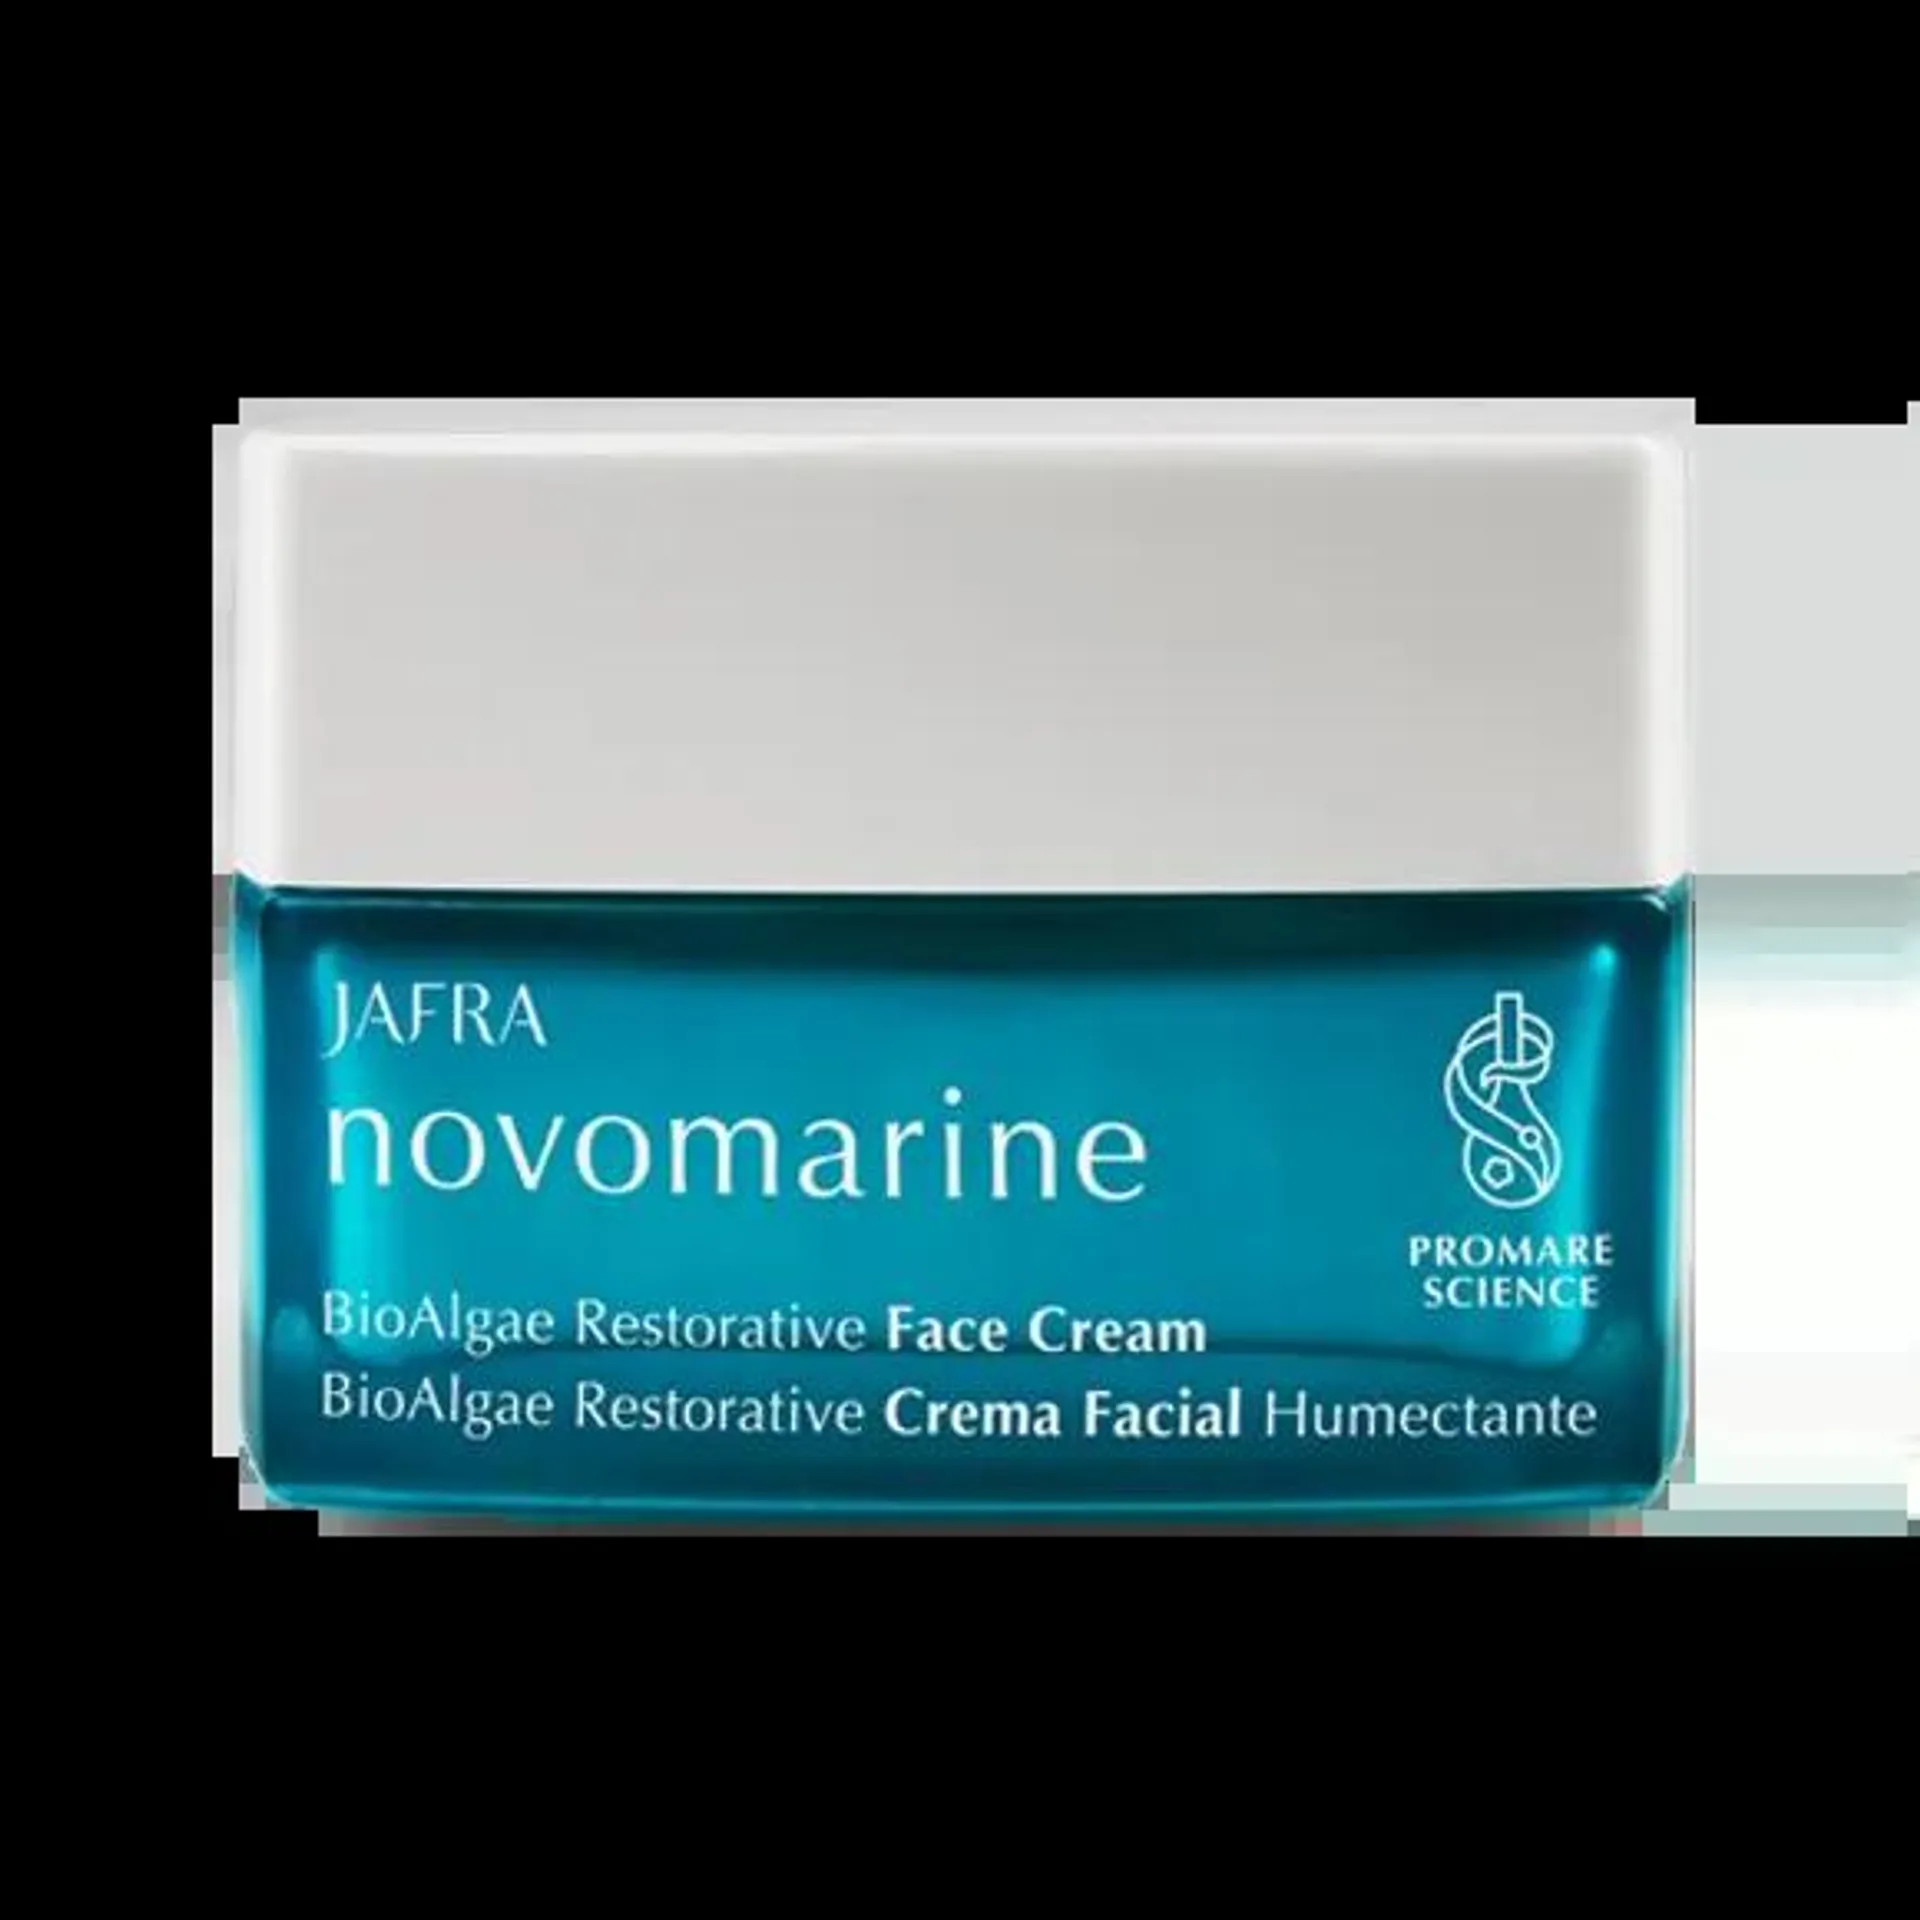 Novomarine Bioalgae Restorative Crema Facial Humectante